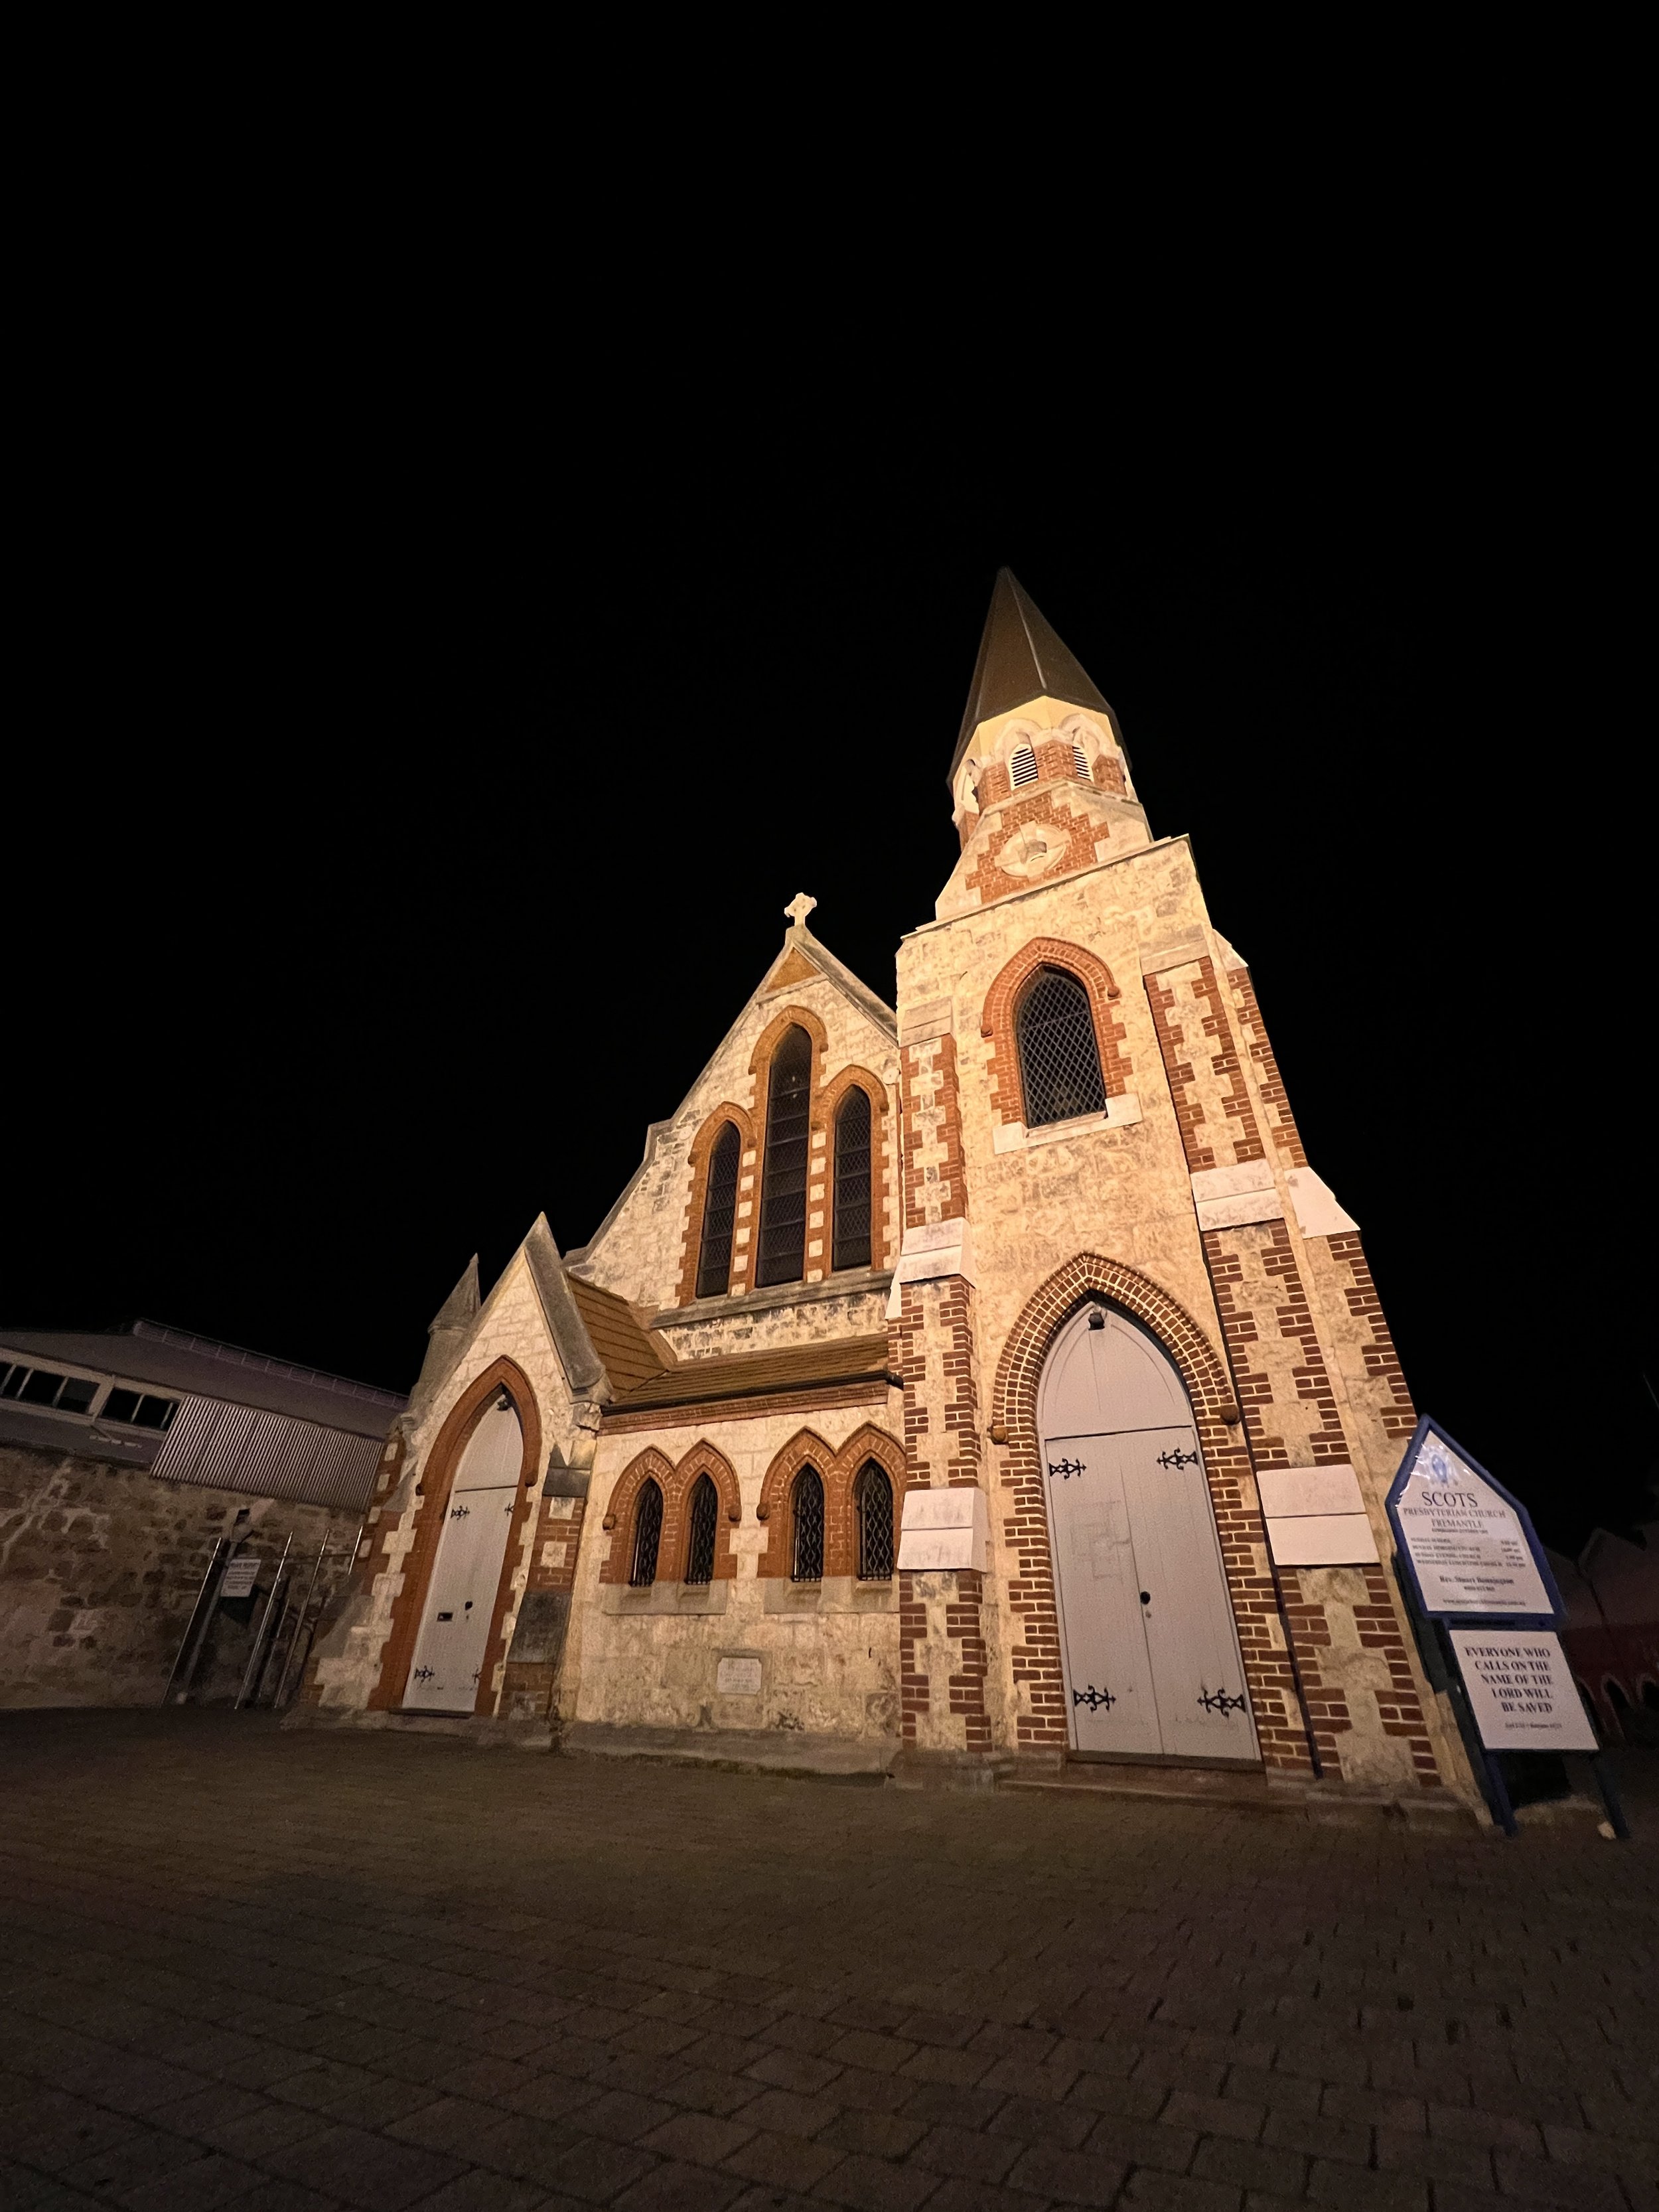 The church at night